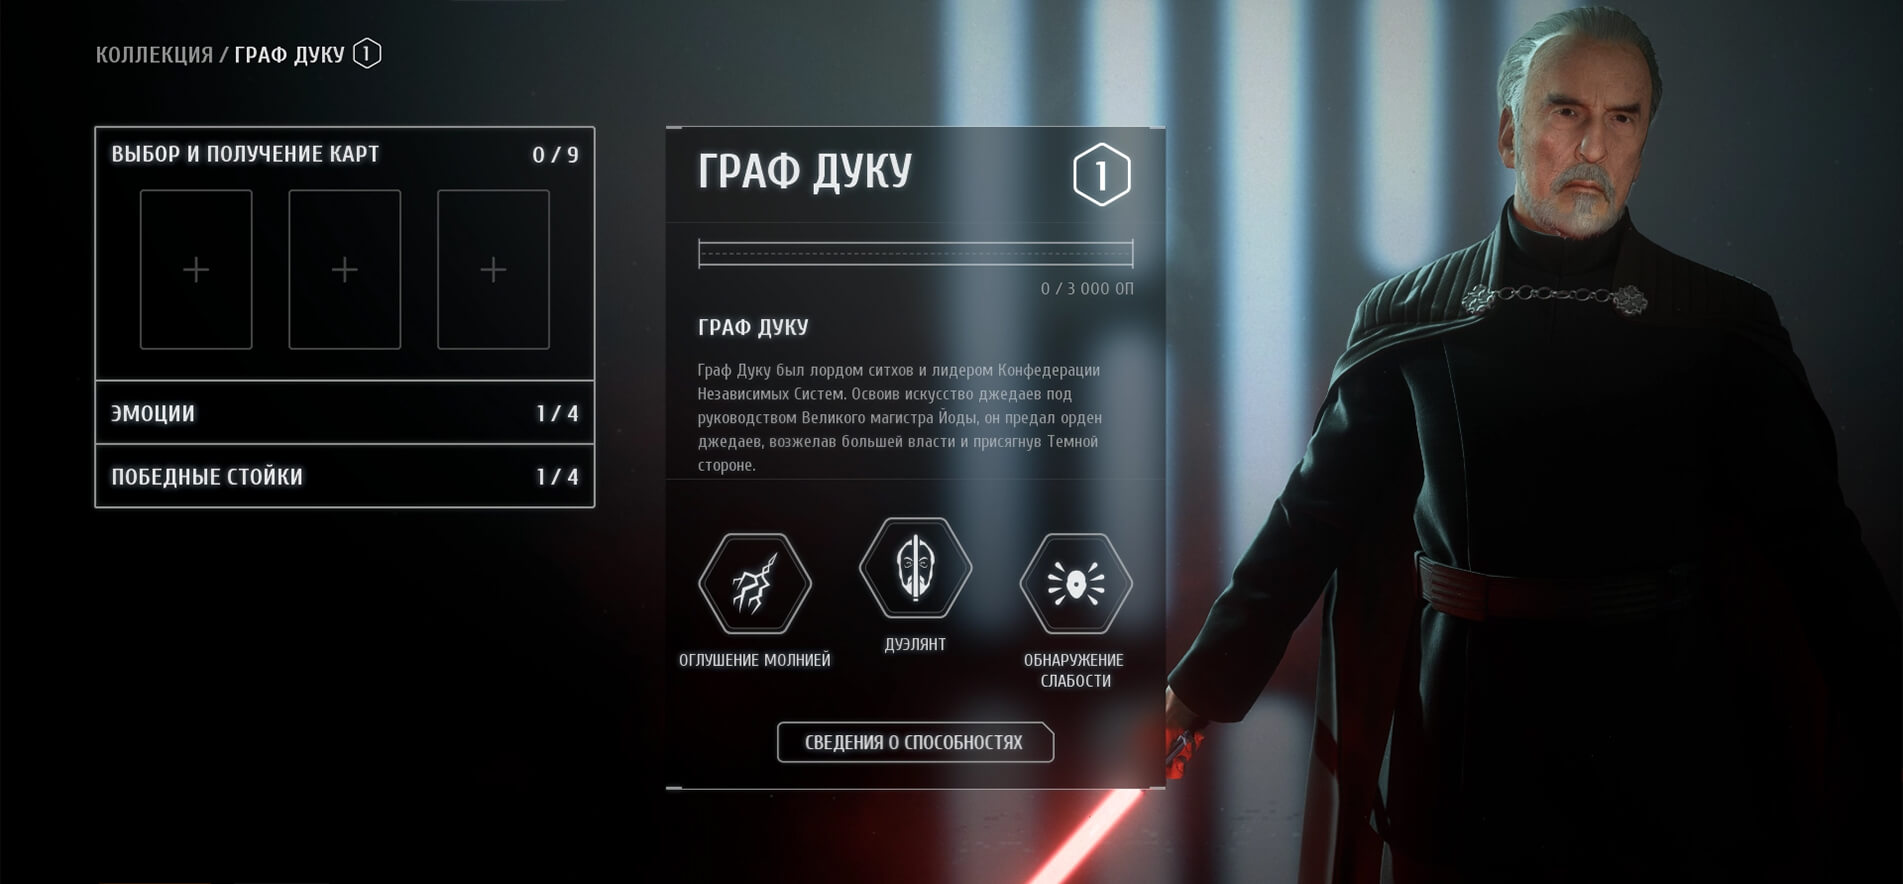 Граф Дуку появится в Star Wars Battlefront II уже сегодня (фото)